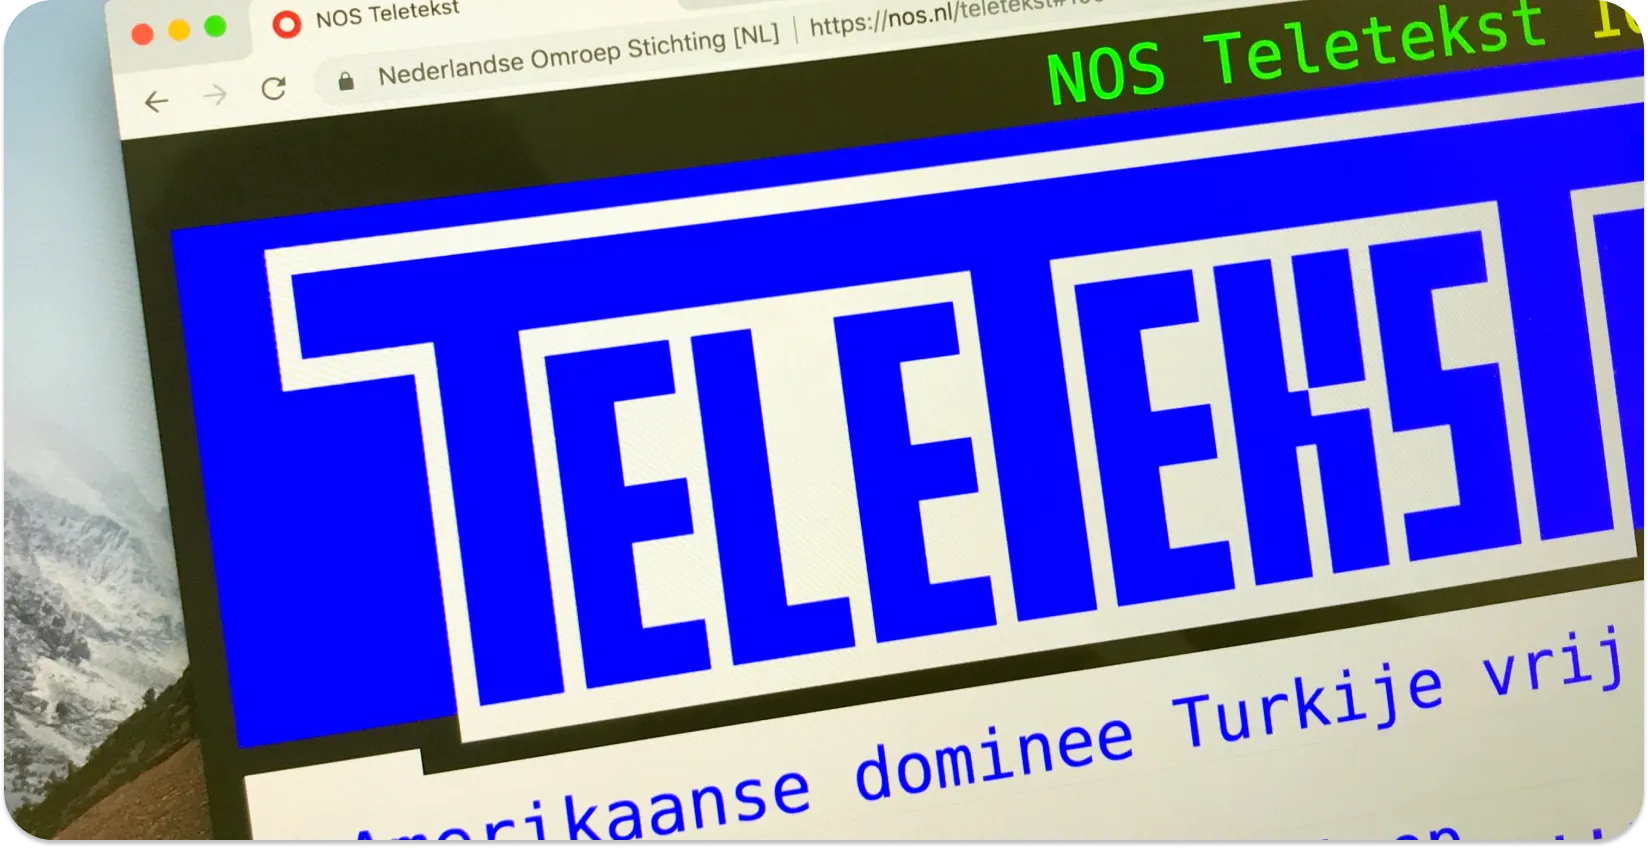 Skrin komputer memaparkan sari kata Teletext dengan tajuk berita, contoh format sari kata teleteks.